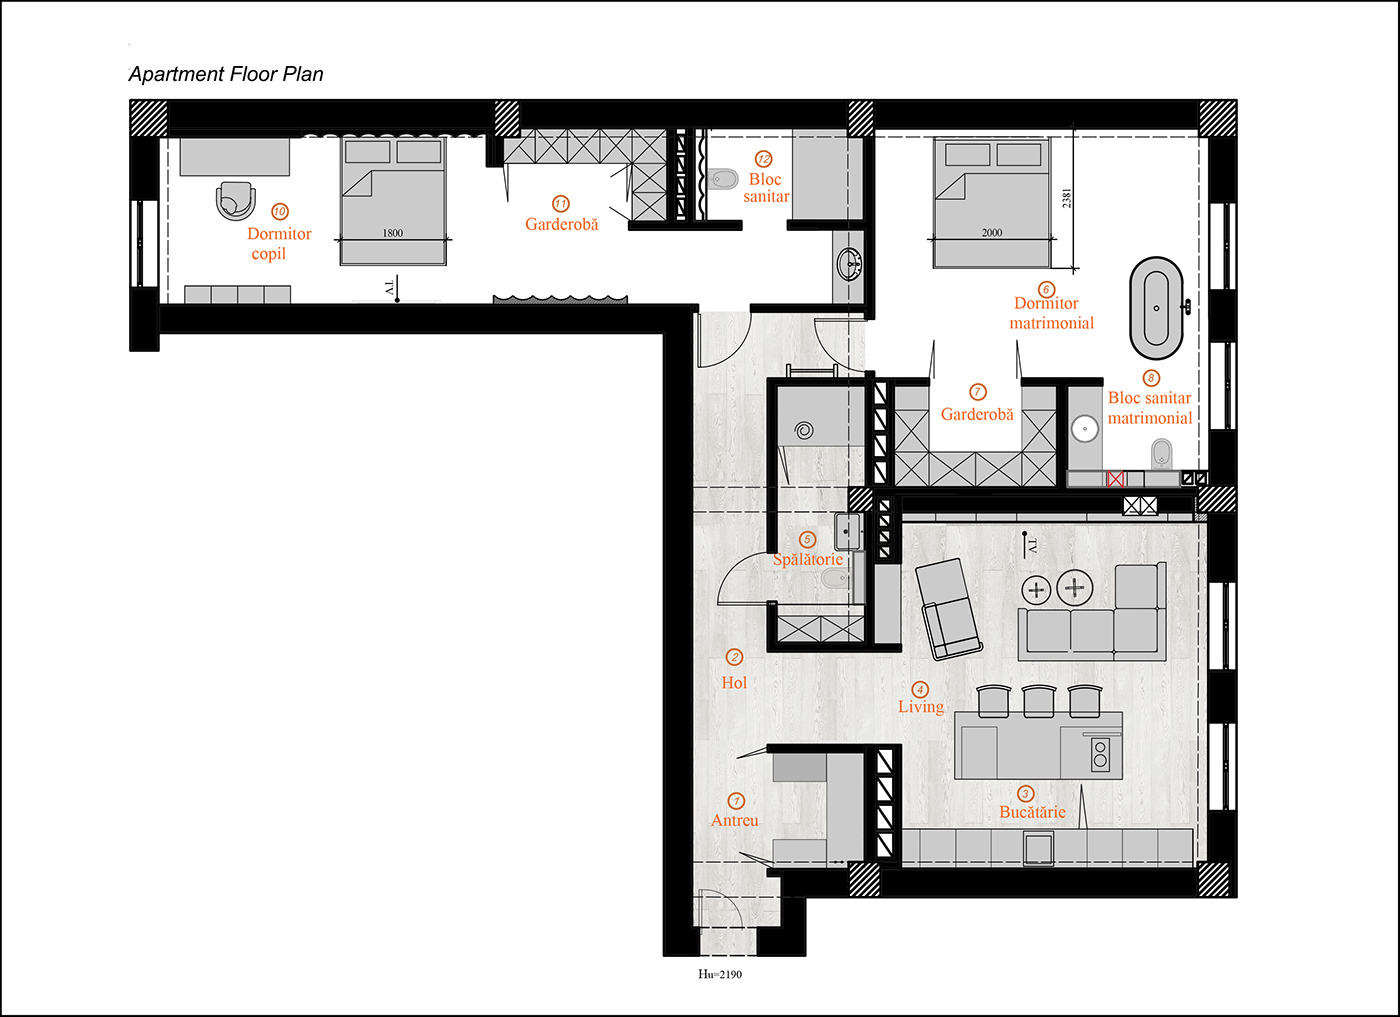 3ds max apartment design architecture archviz CGI kitchen living room visualization дизаин интерьера Дизайн квартиры